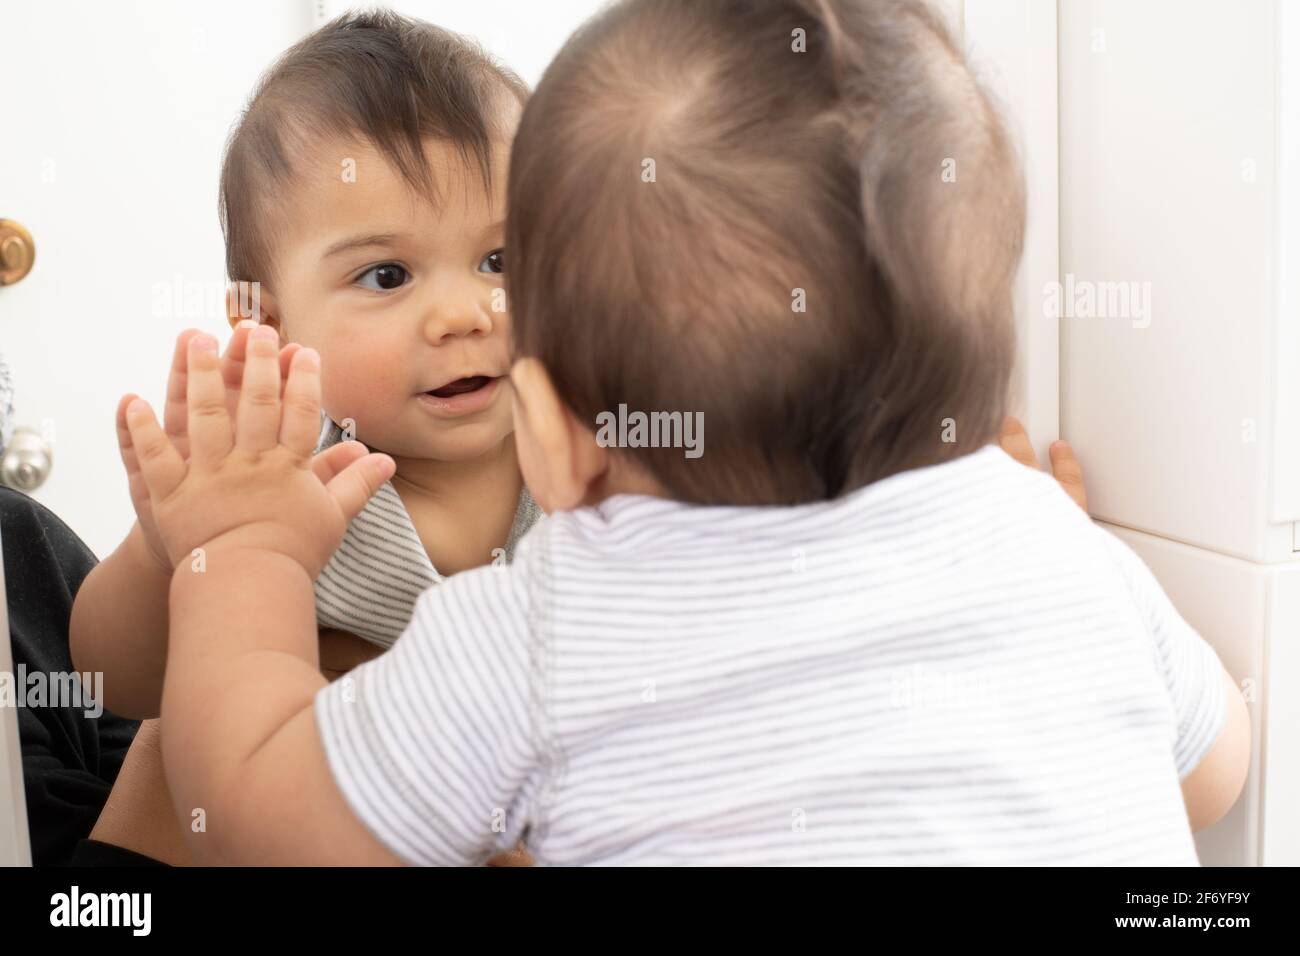 8 Monate alter Junge Nahaufnahme betrachtet seine Spiegelung im Spiegel und weiß nicht, dass es seine eigene Spiegelung ist Stockfoto